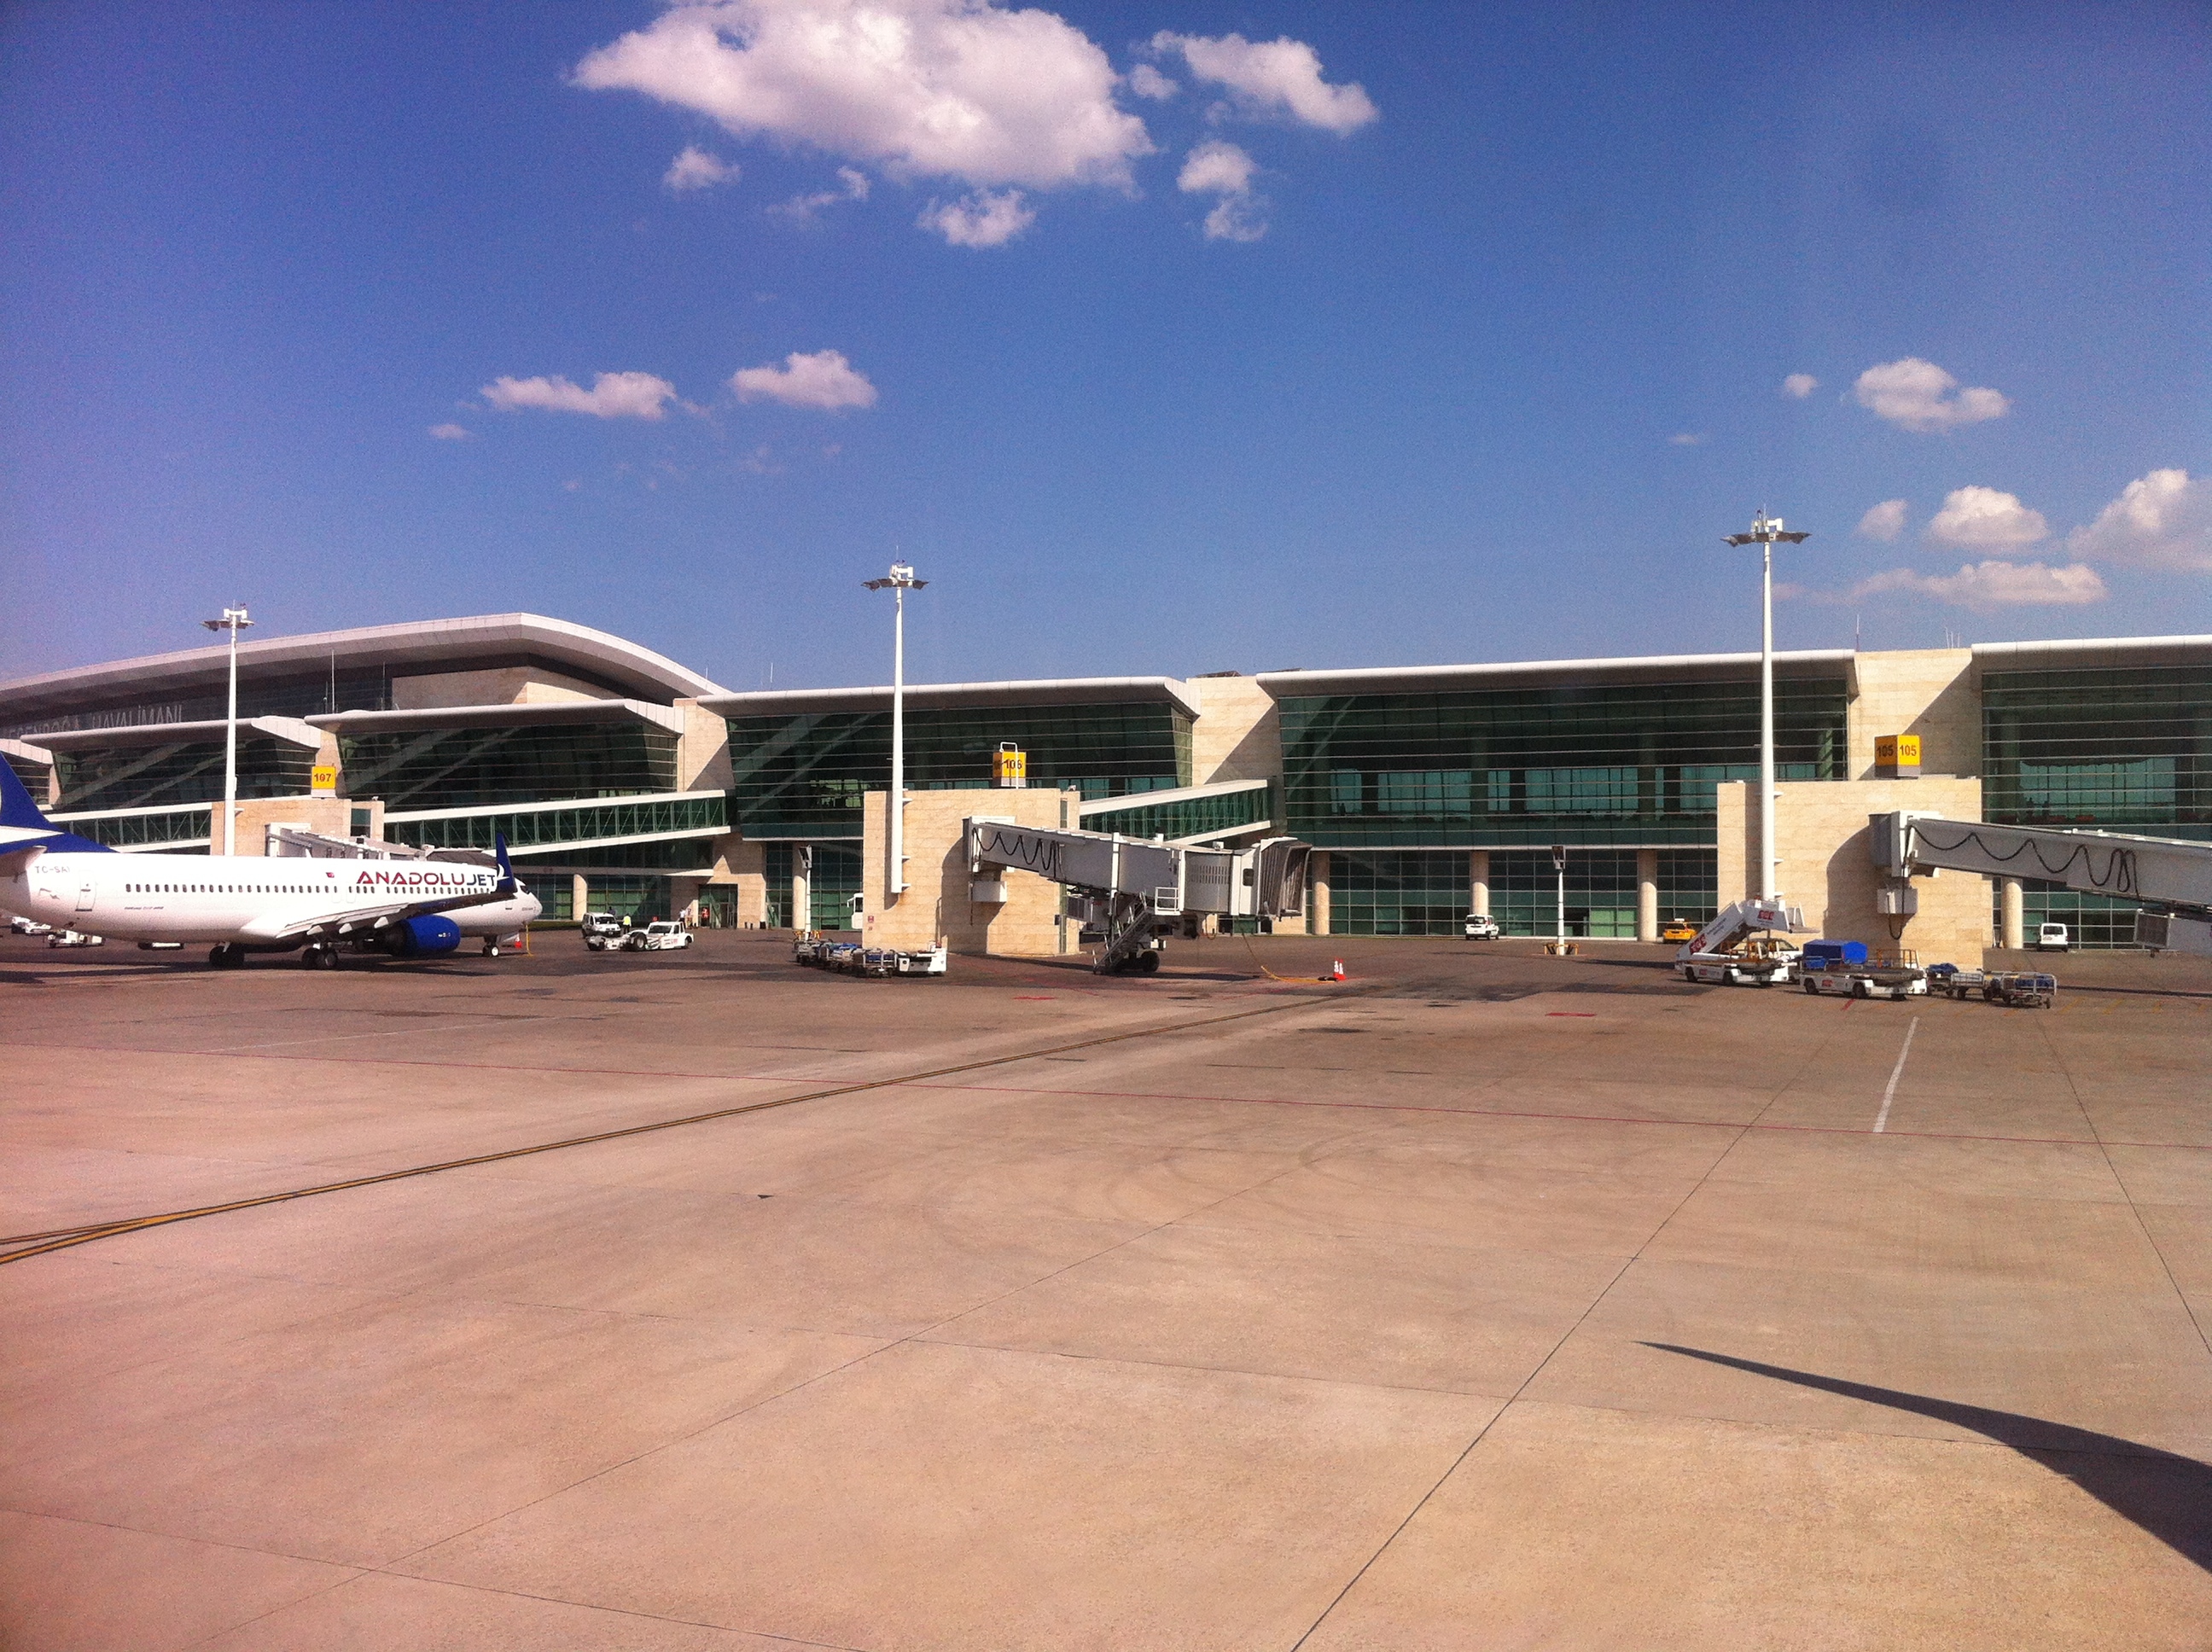 يقدم مطار إيسنبوغا مجموعة واسعة من الخدمات للمسافرين